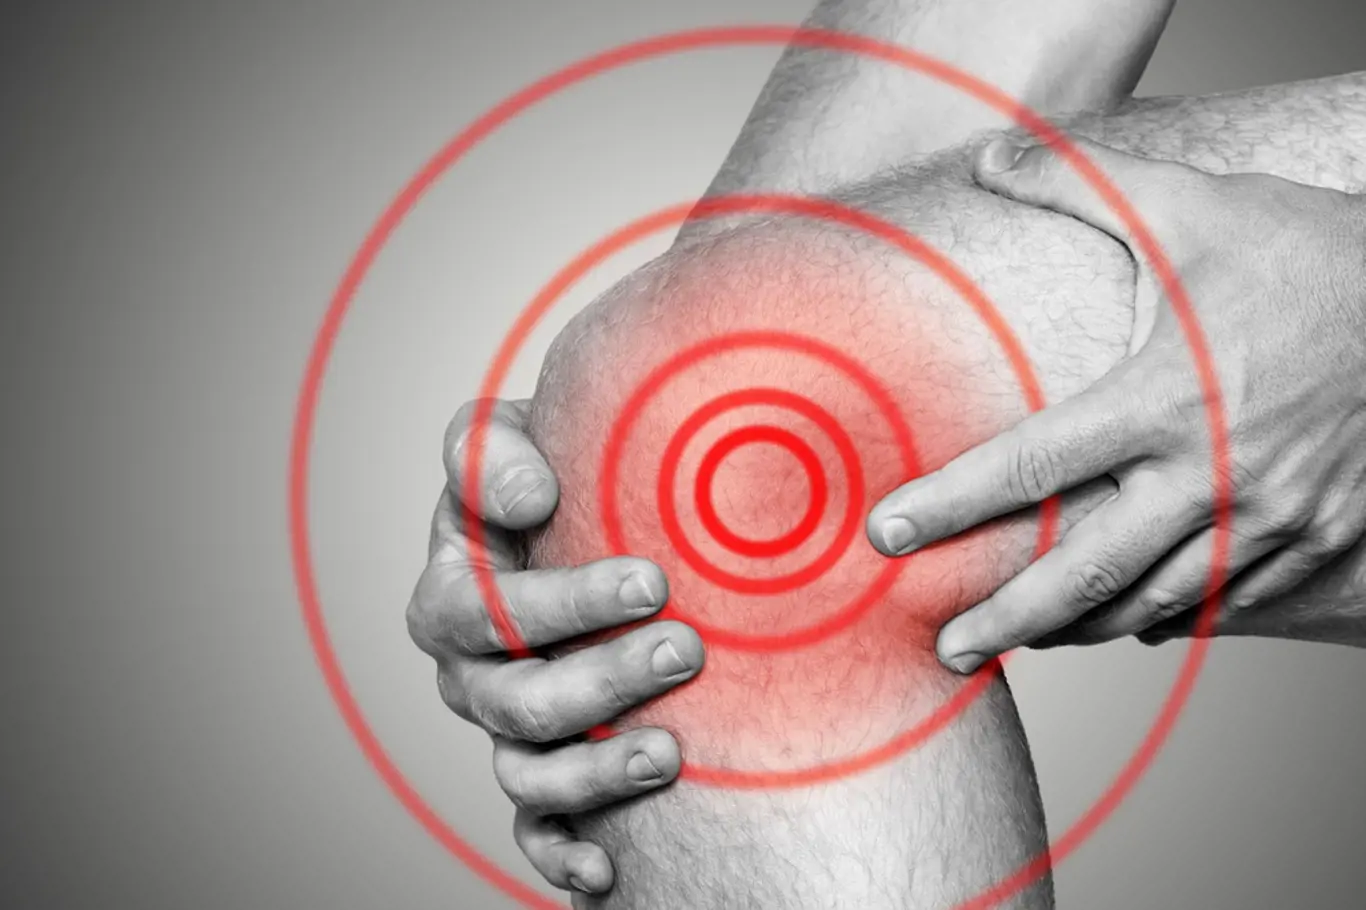 Akutní bolest v kolenním kloubu je velmi nepříjemná.